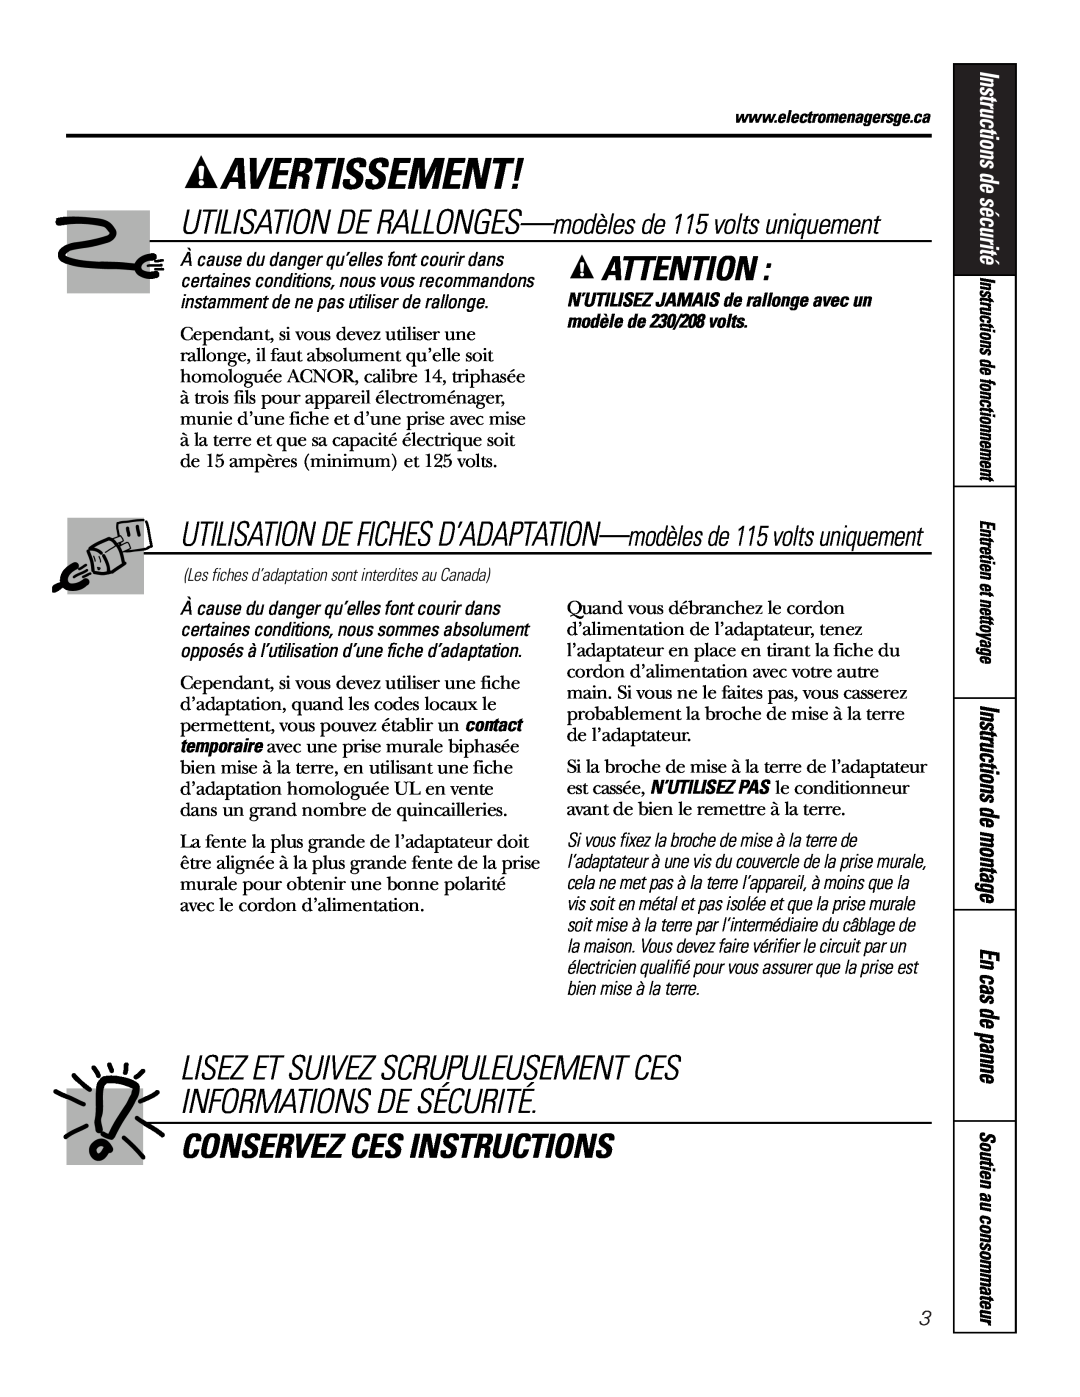 GE AJCS 06 Avertissement, Lisez Et Suivez Scrupuleusement Ces, Informations De Sécurité, Conservez Ces Instructions 